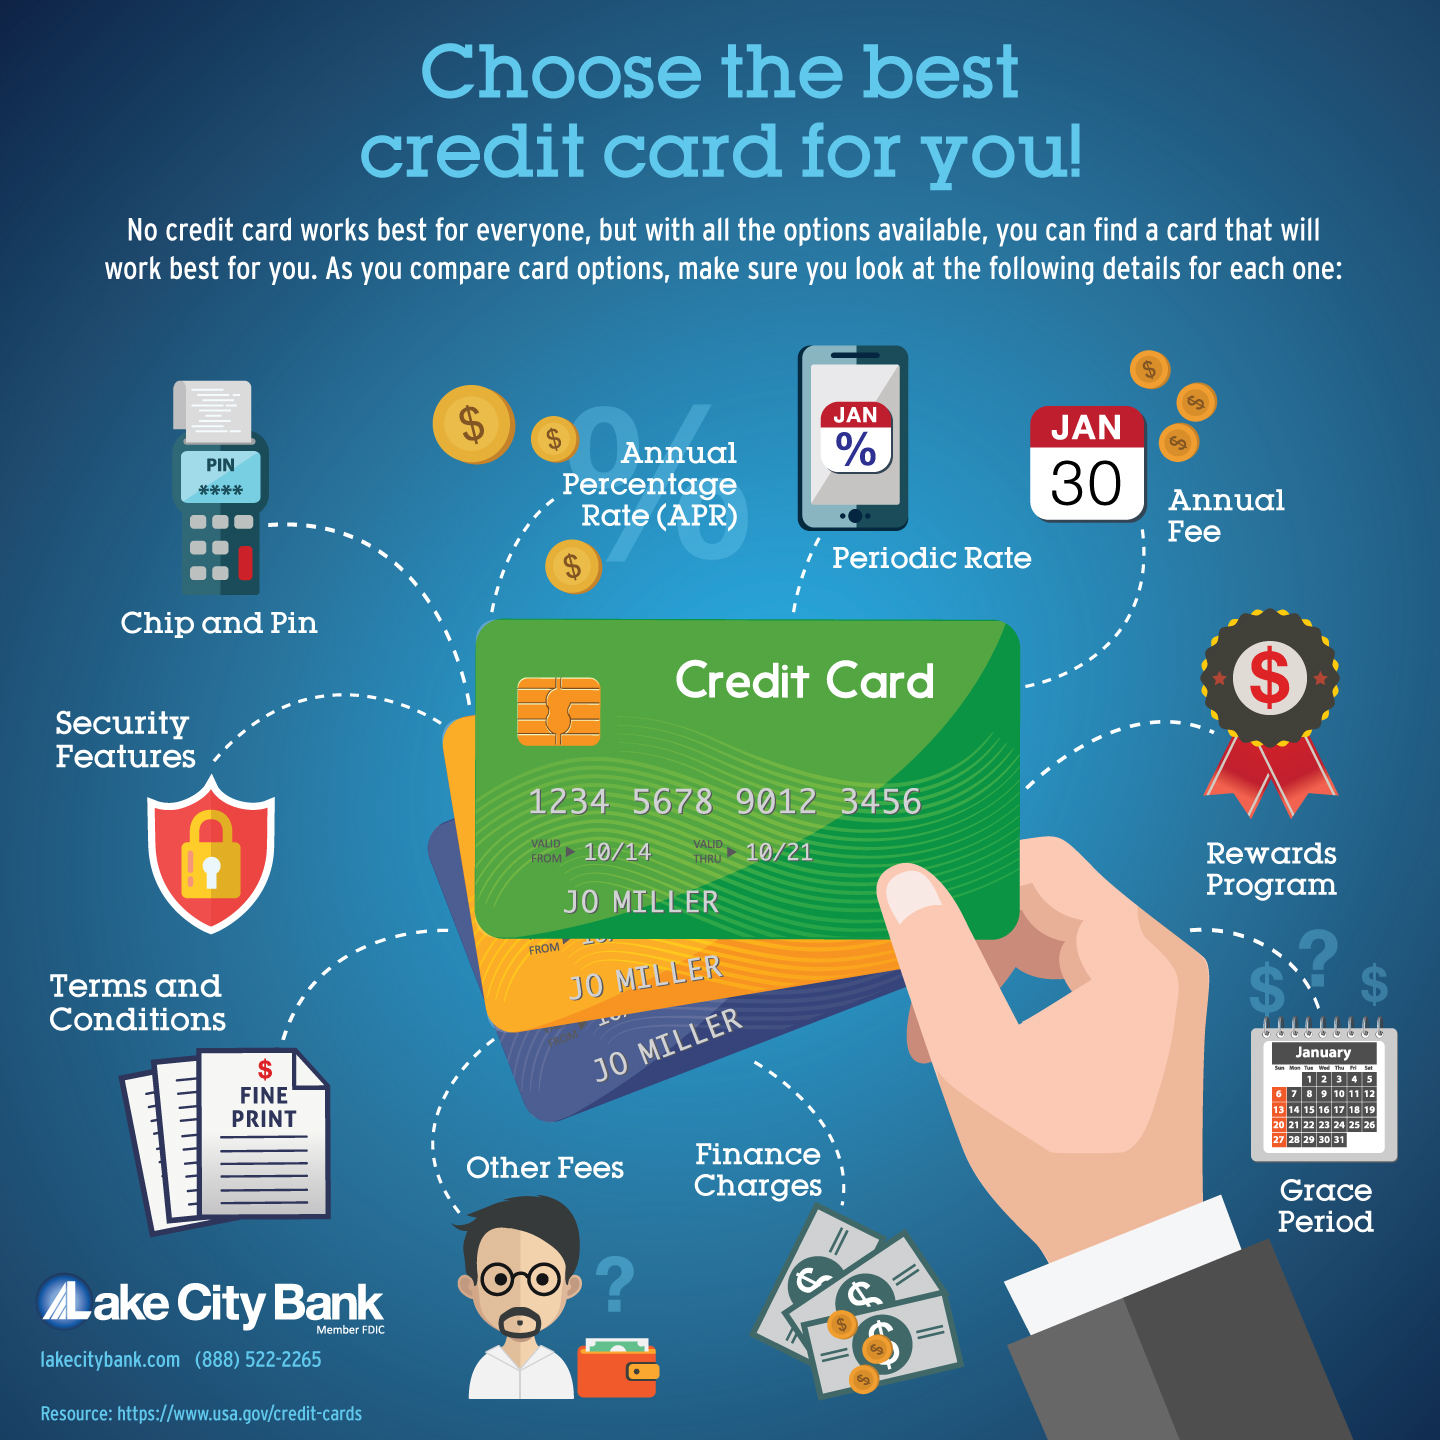 Hva skal jeg se etter når jeg velger et kredittkort?